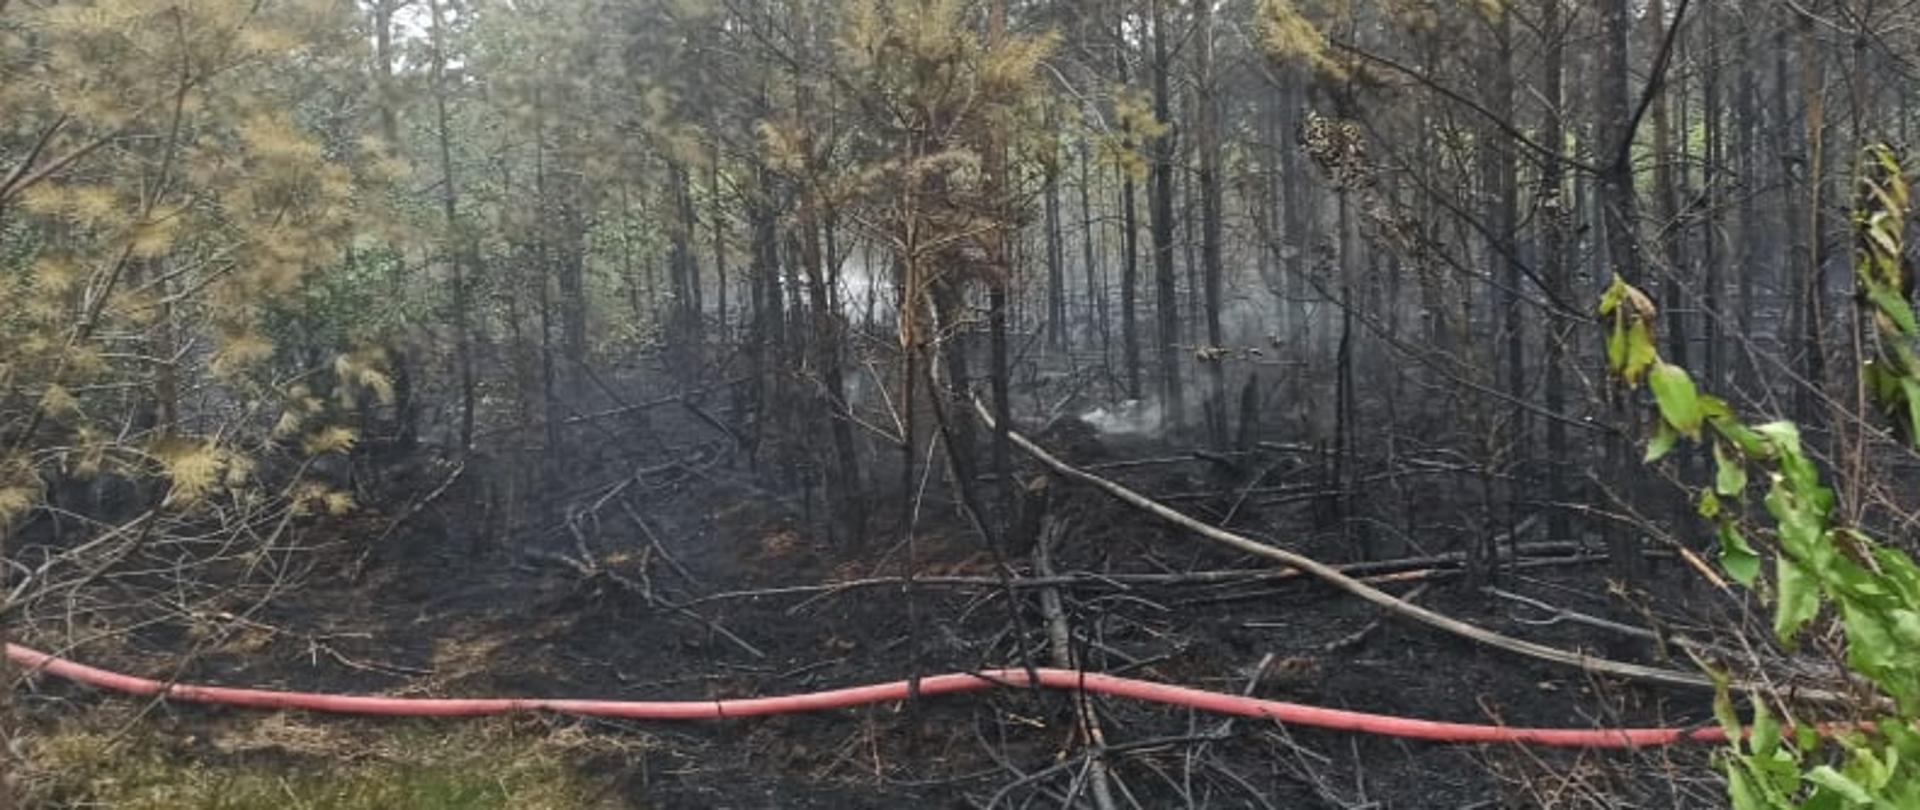 Pożar lasu w pobliżu miejscowości Buczek w powiecie białogardzkim. Zdjęcie przedstawia spalony las i pojedyncze zarzewia ognia. Na wypalonej ściółce leży linia wężowa